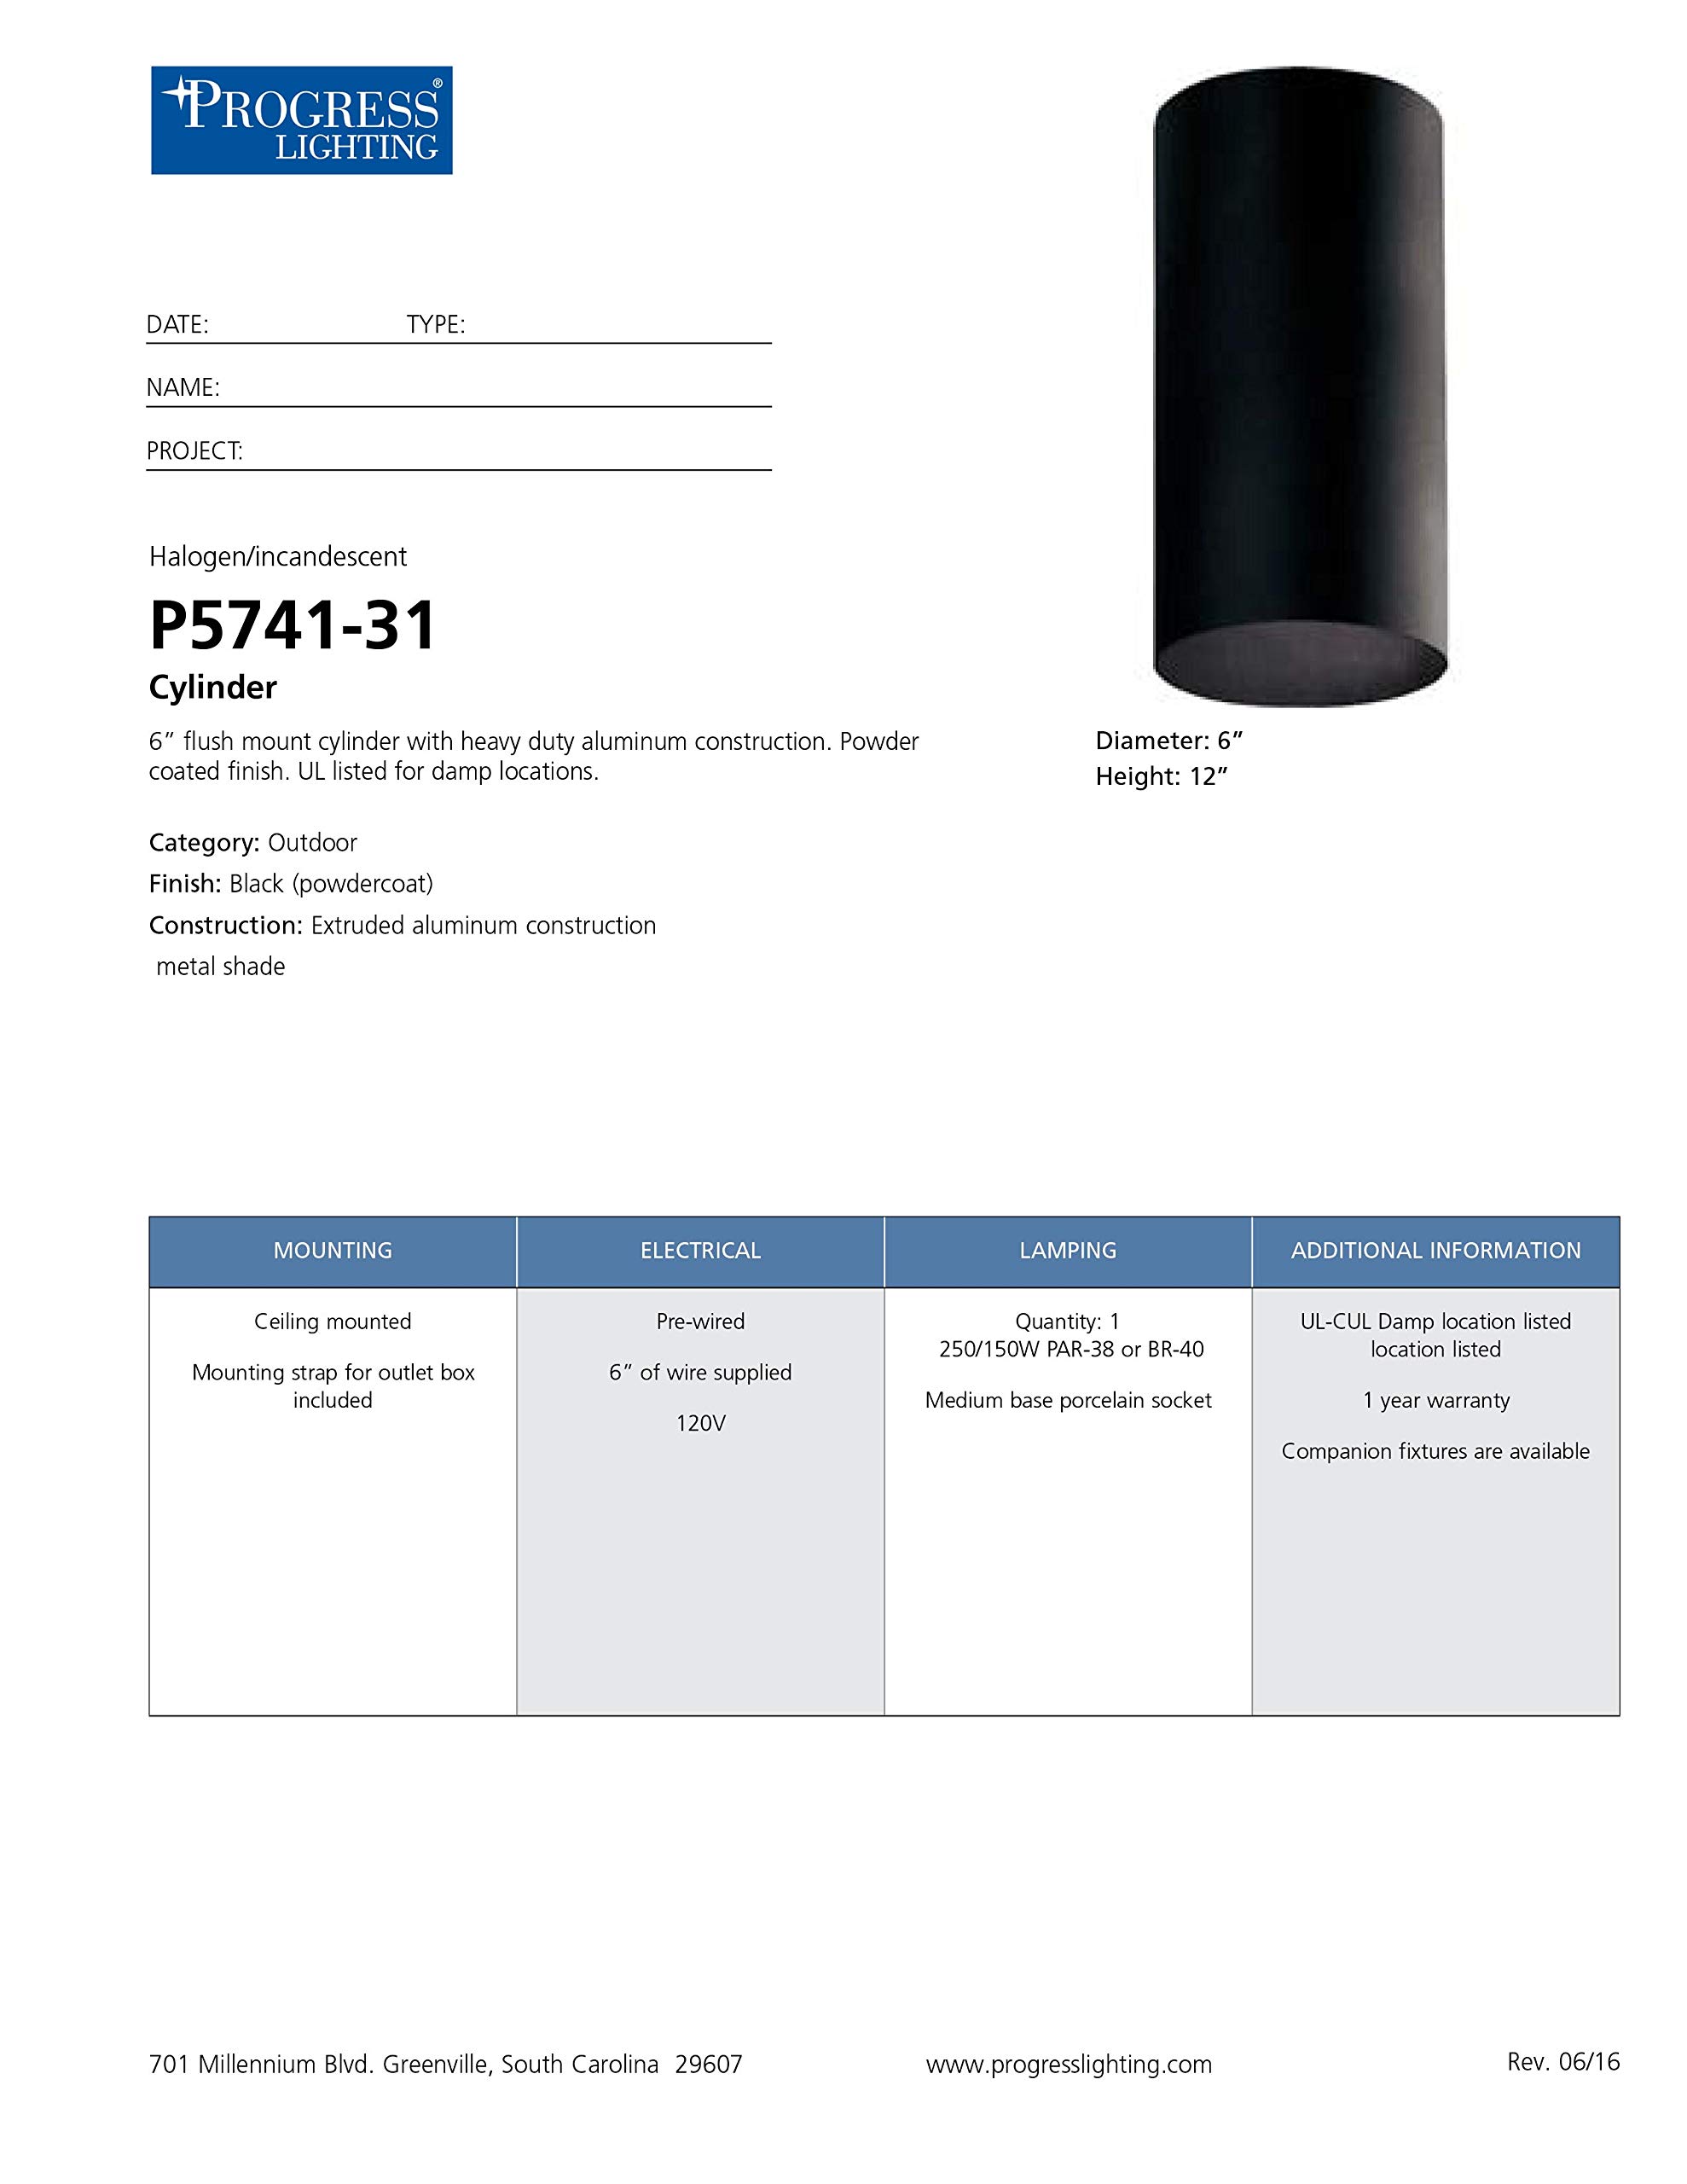 Progress Lighting P5741-31 Cylinder Outdoor, 6-Inch Diameter x 12-Inch Height, Black